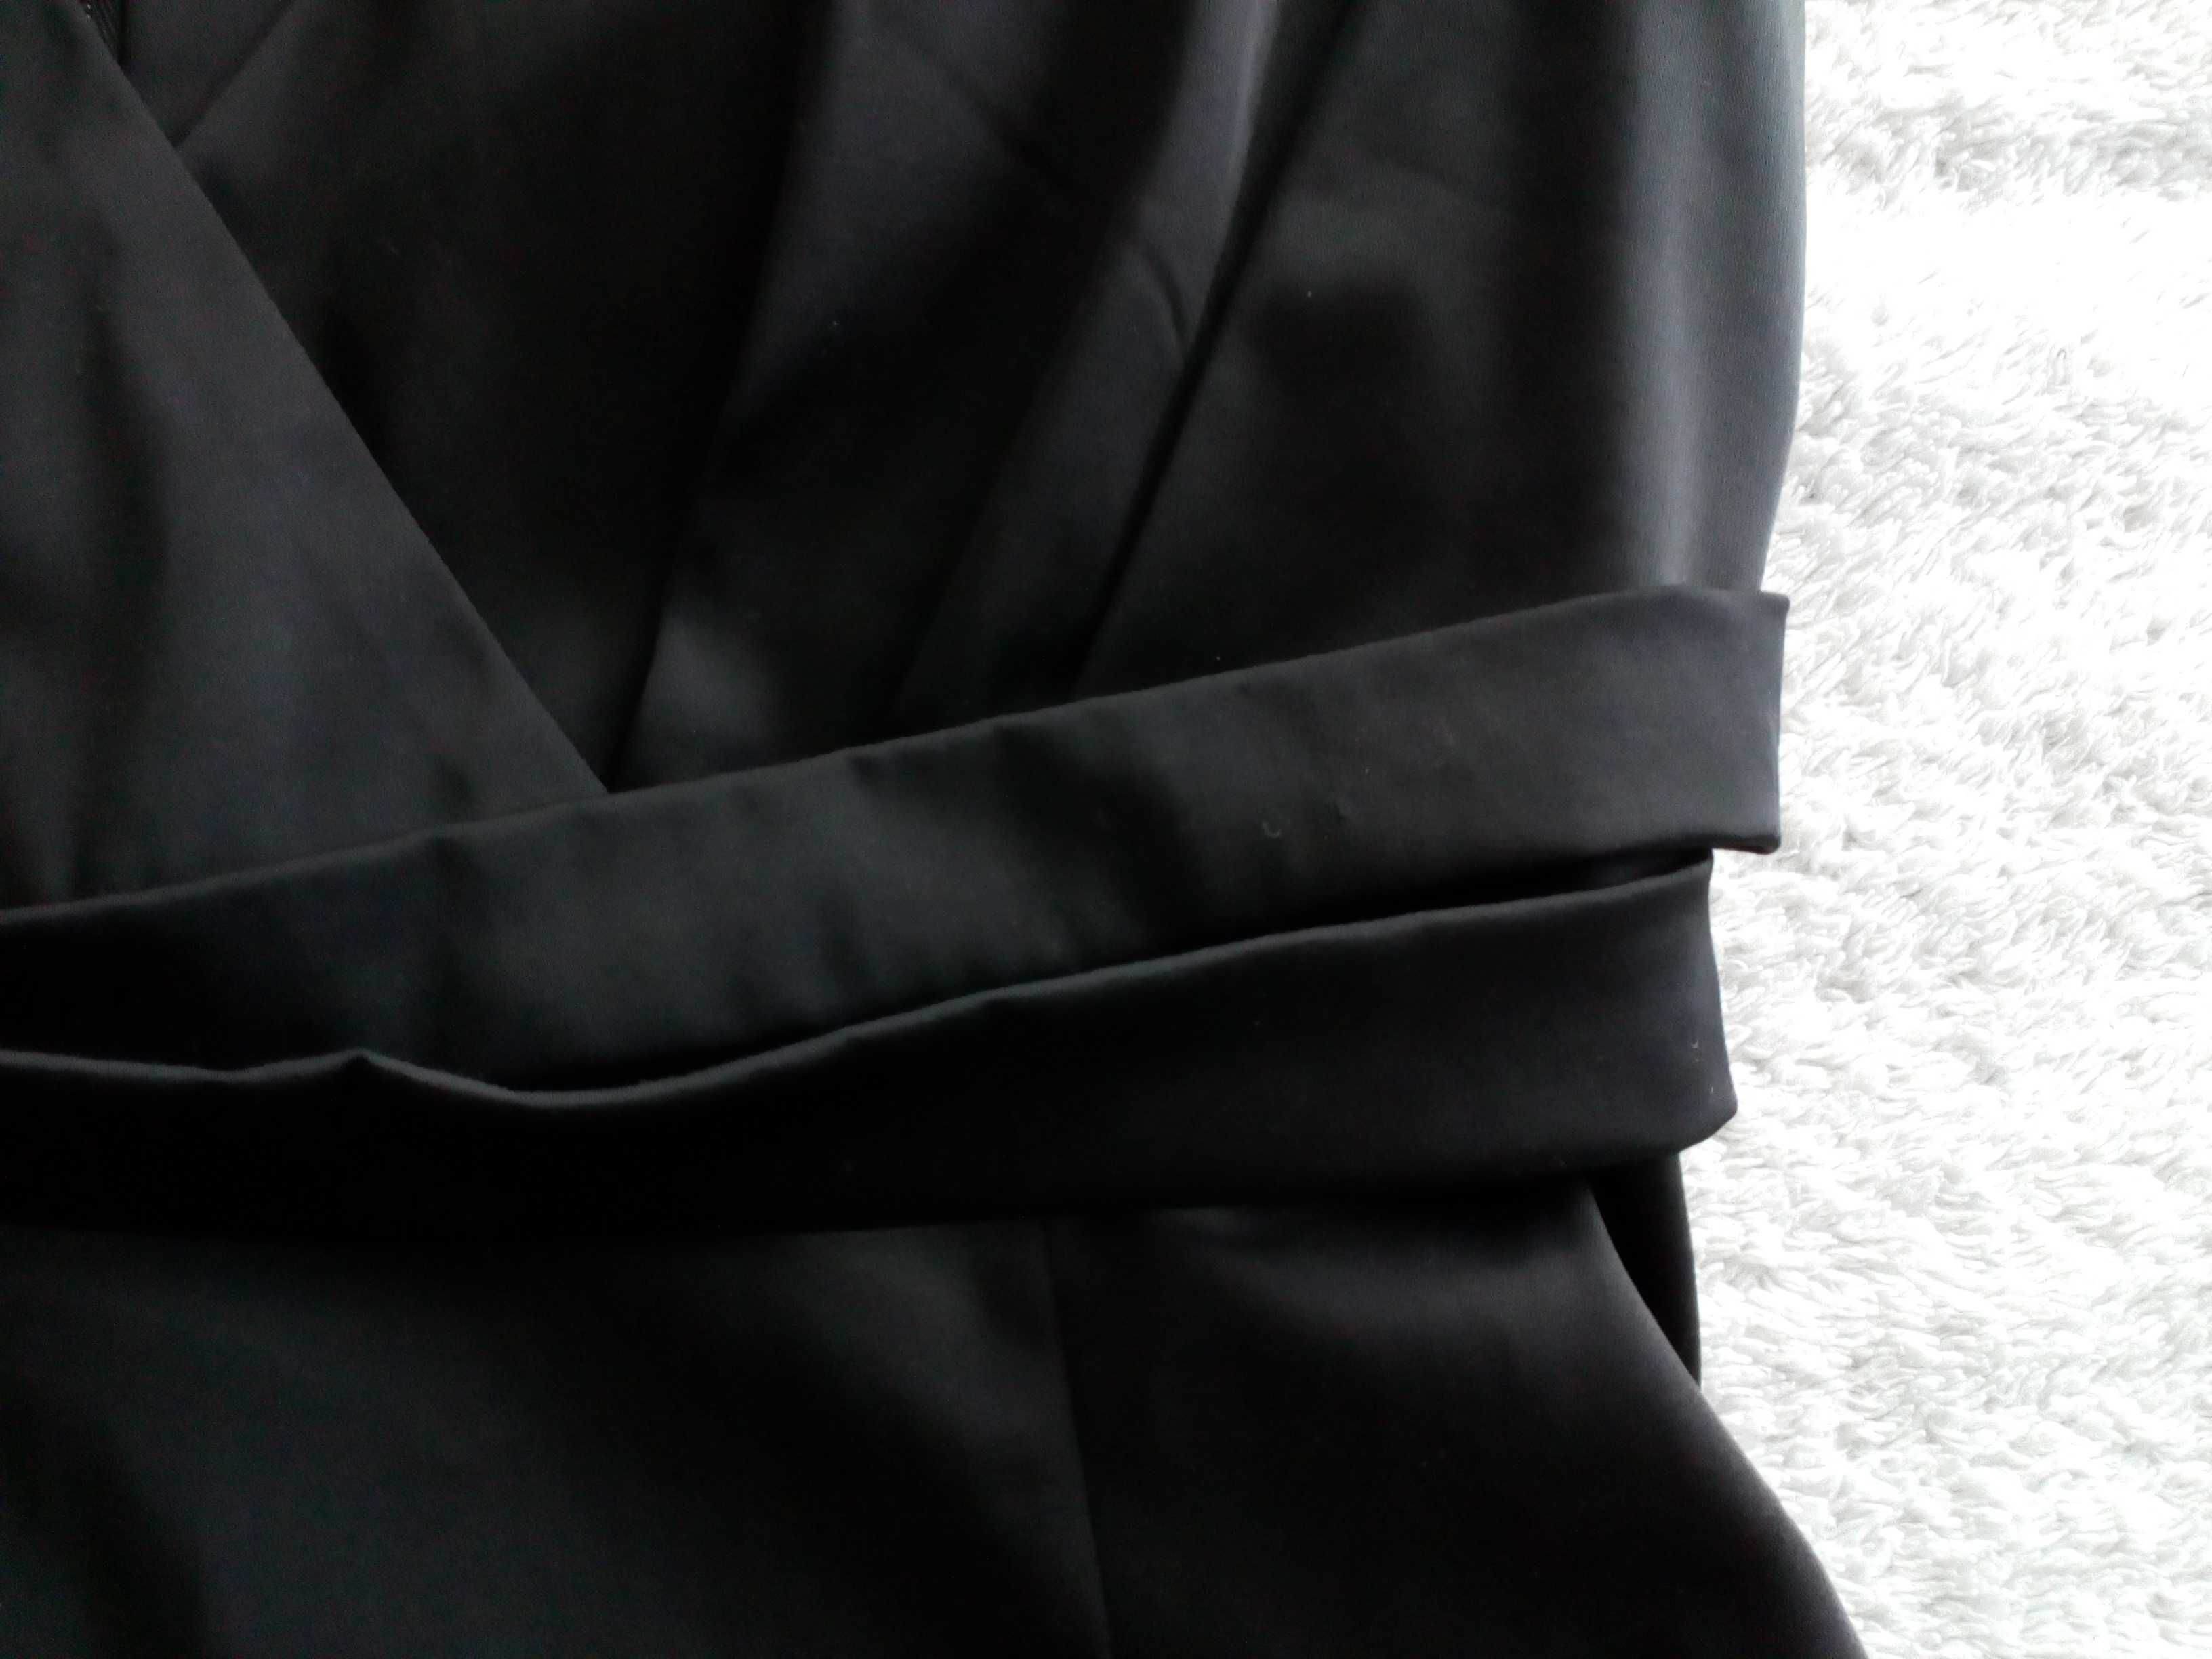 Czarna elegancka wizytowa biurowa sukienka Top secret 34 - 36 jak nowa